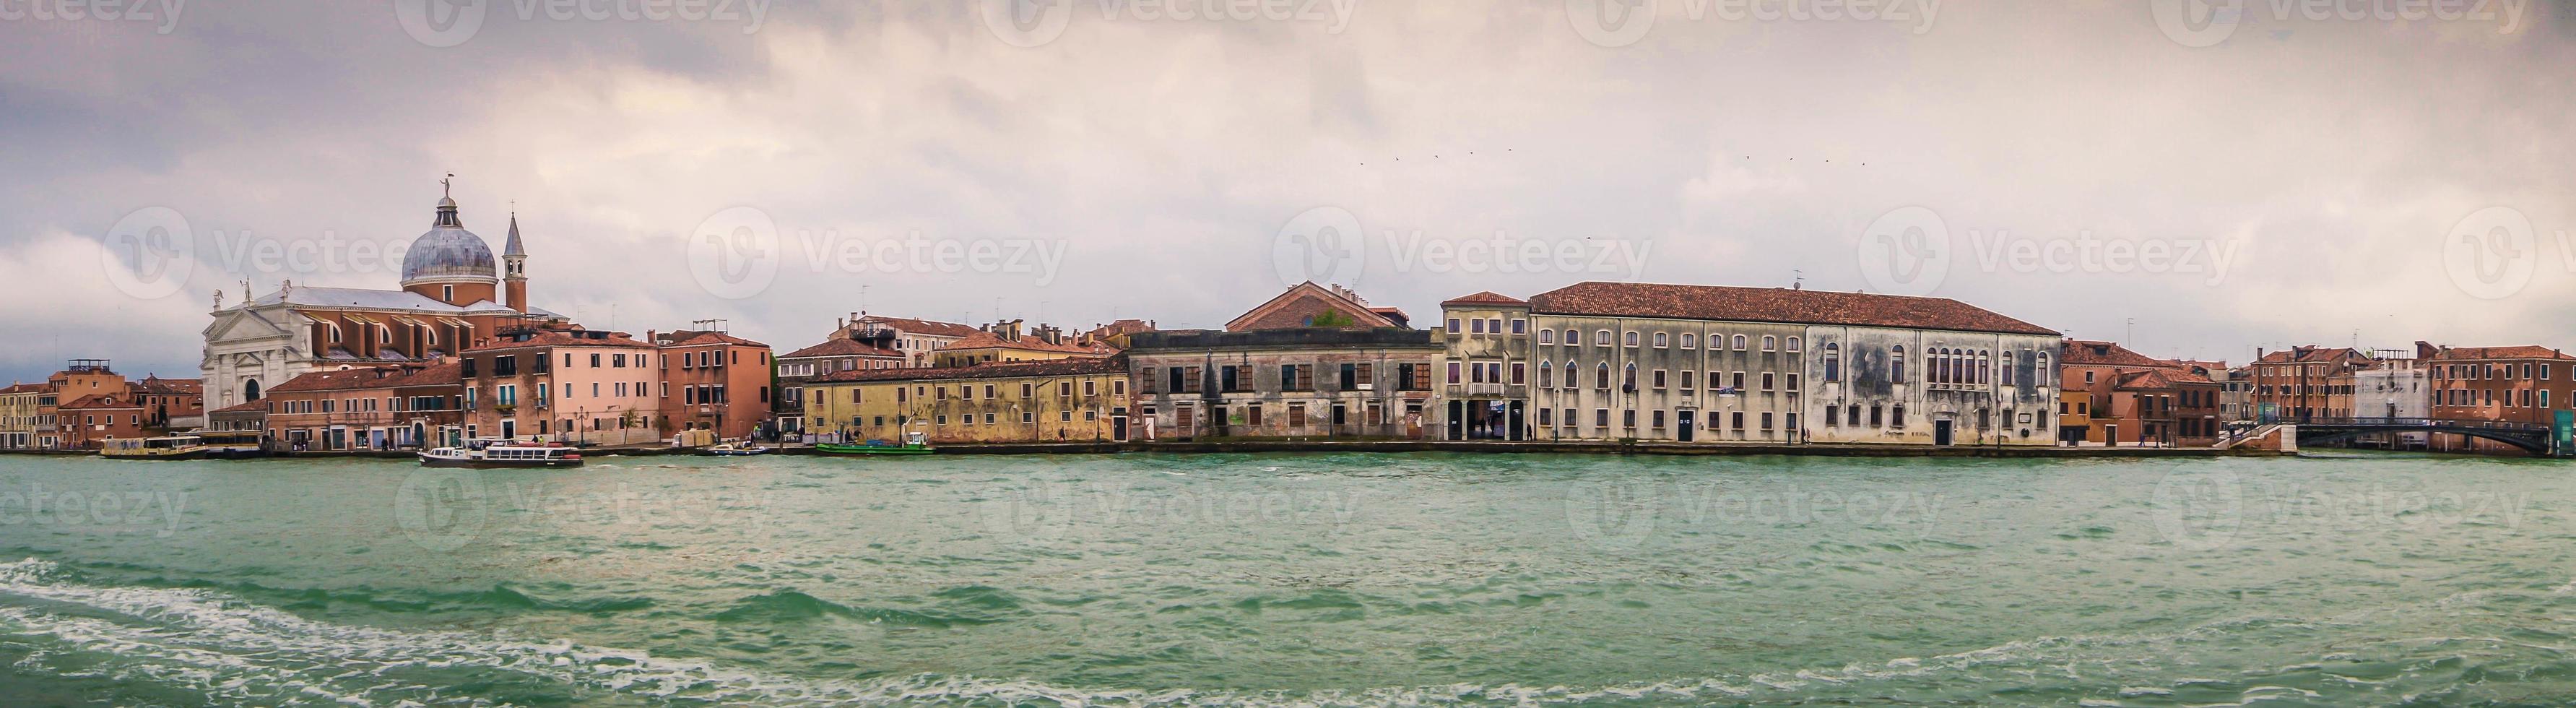 venise ville dans la lagune de la mer adriatique photo